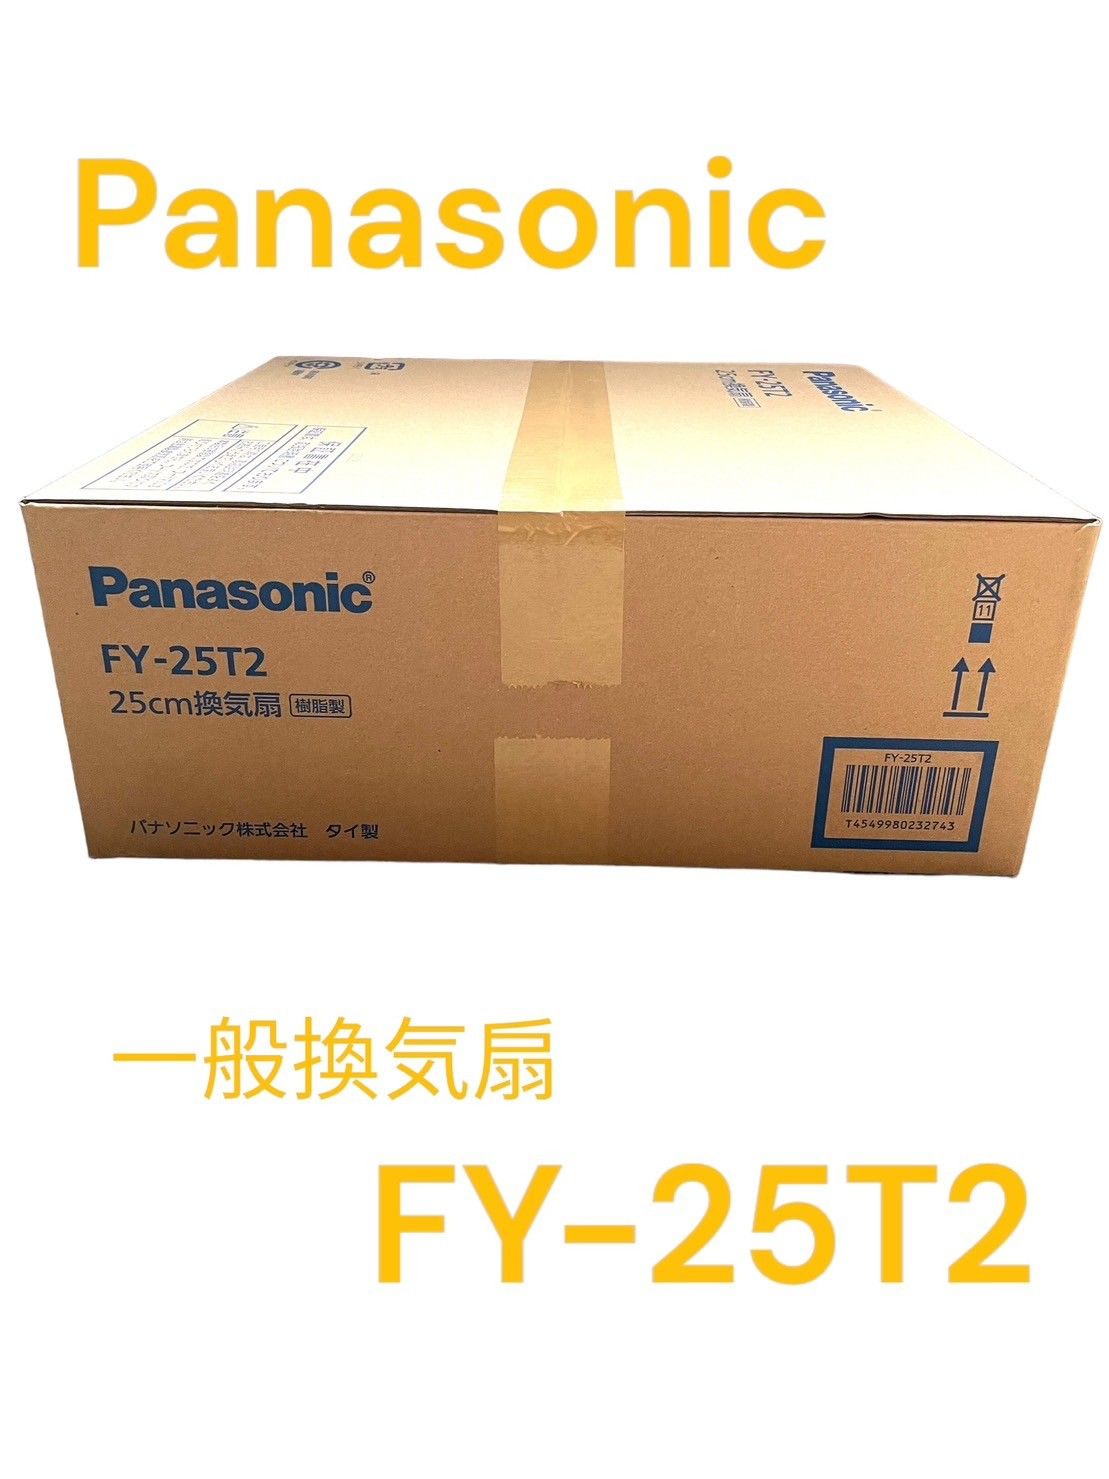 Panasonic ワンタッチフィルター換気扇 FY-25T2 パナソニック